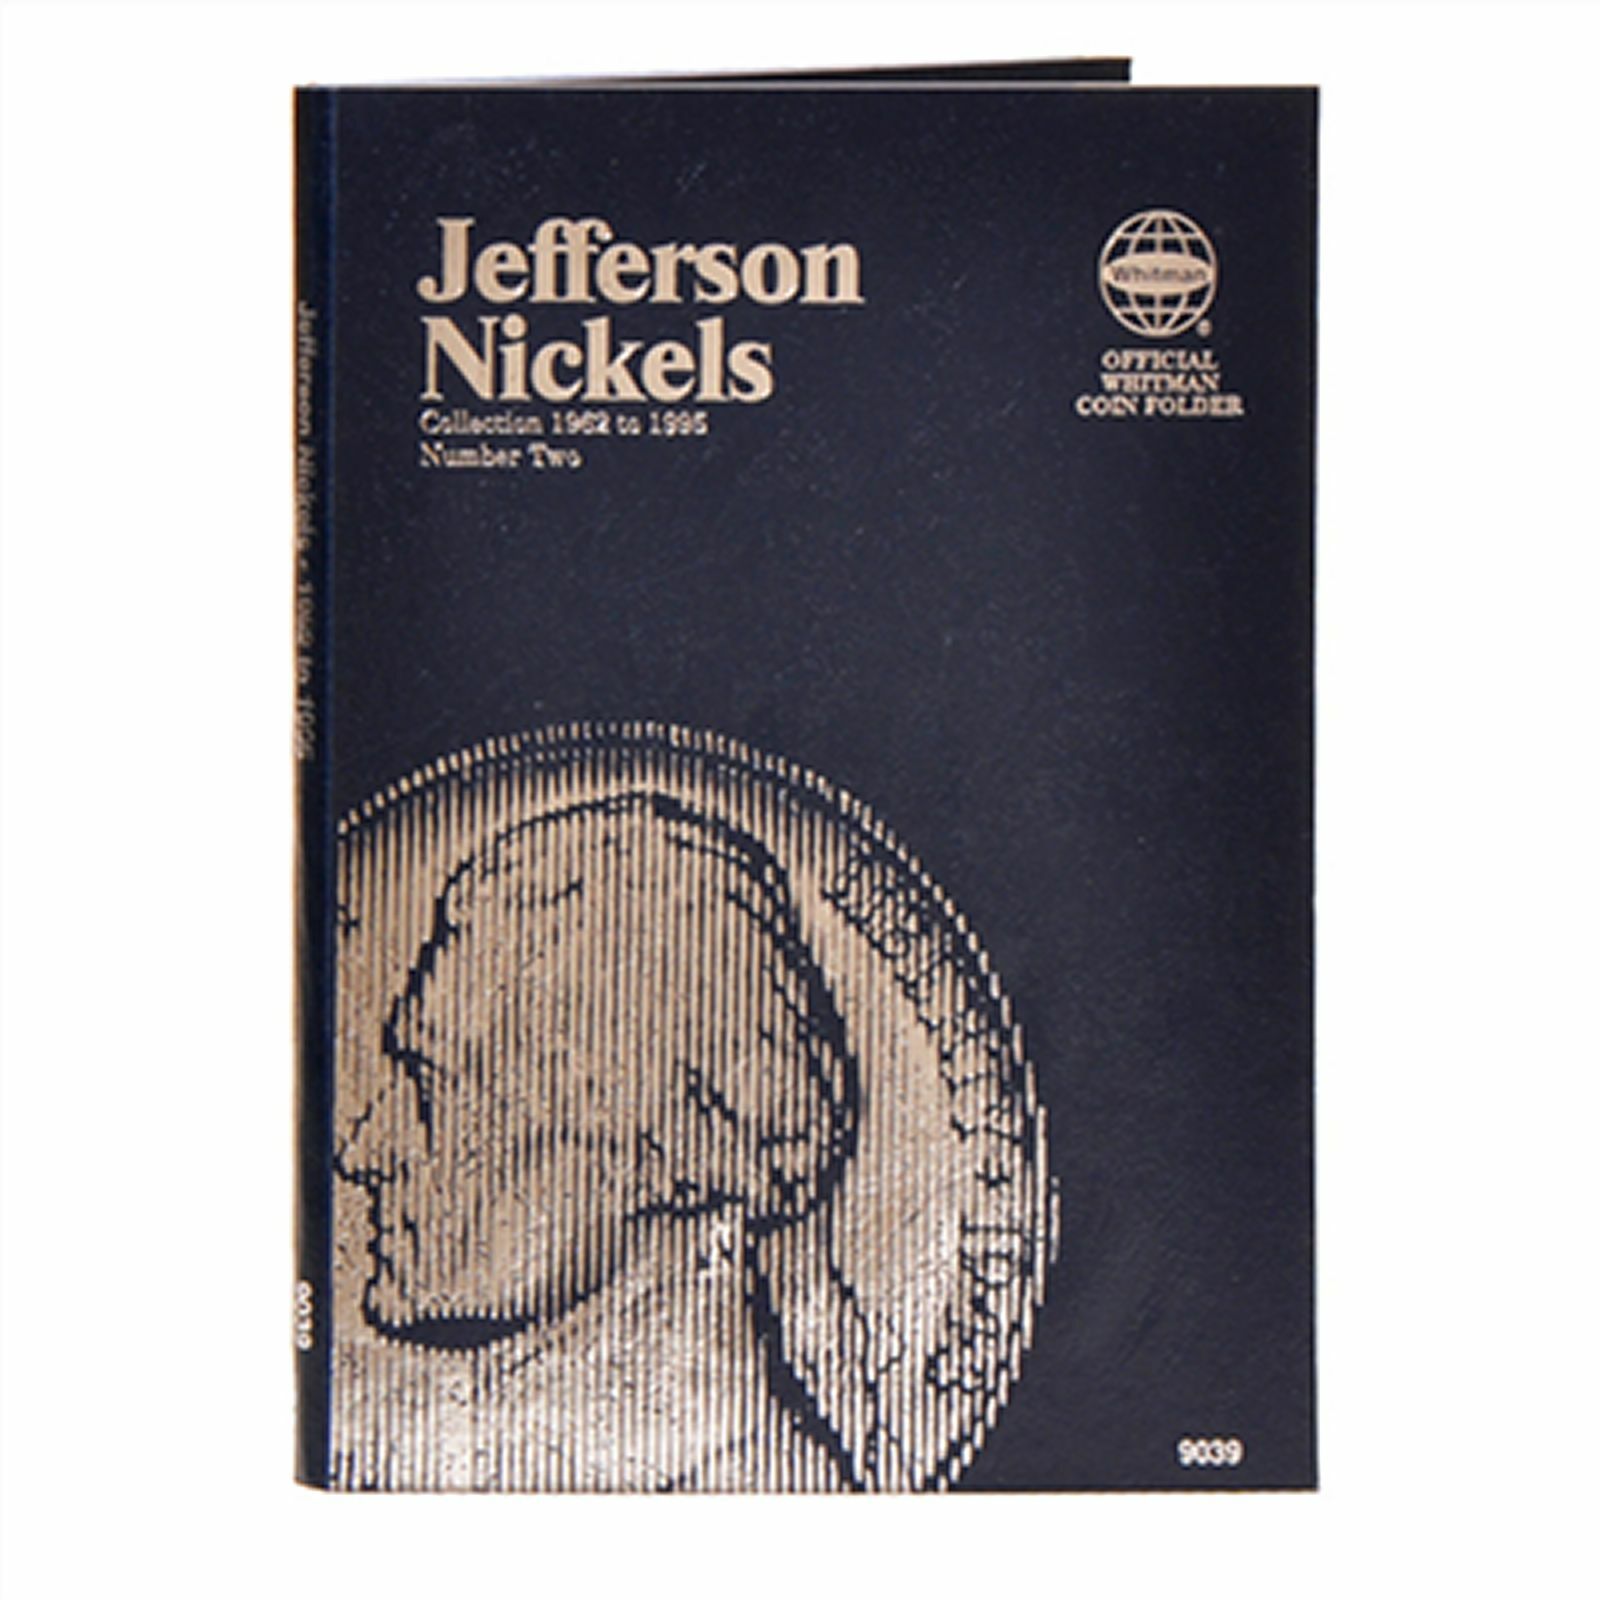 Whitman Blue Coin Folder 9039 #2 Jefferson Nickel 1962 - 1995  Album / Book